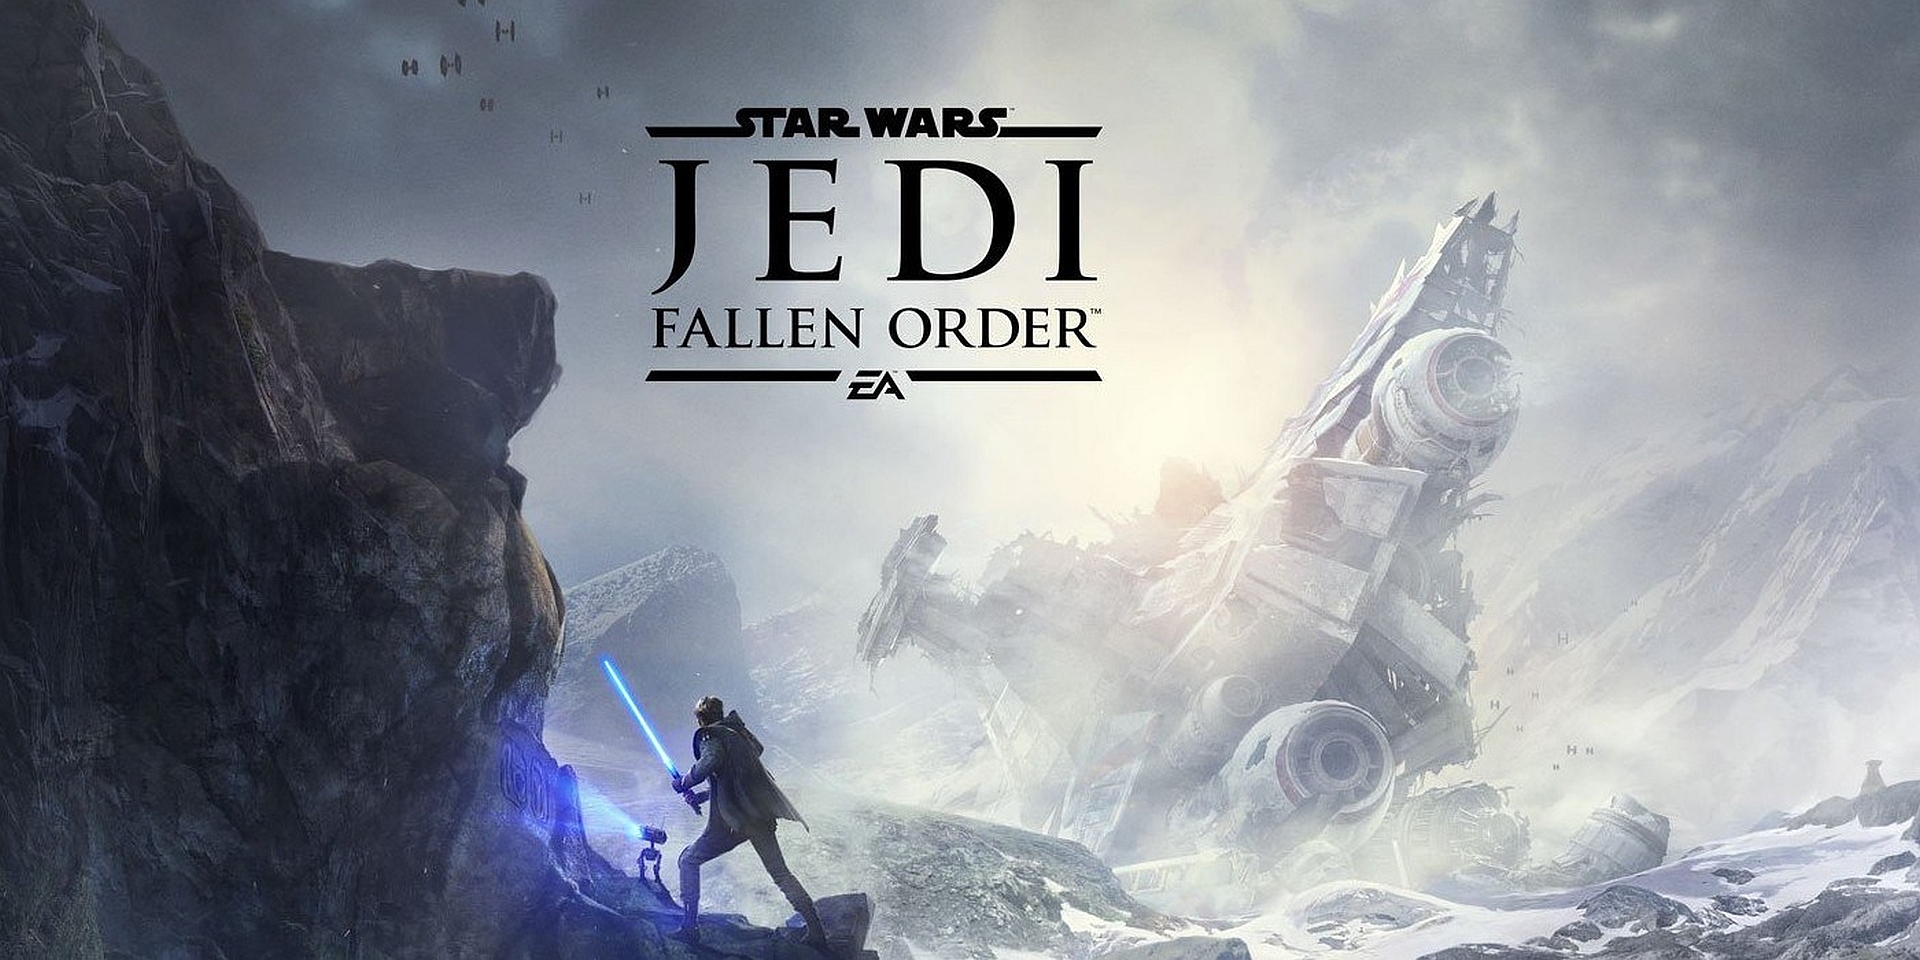 Star Wars Jedi: Fallen Order Review - Star Wars Jedi: Fallen Order